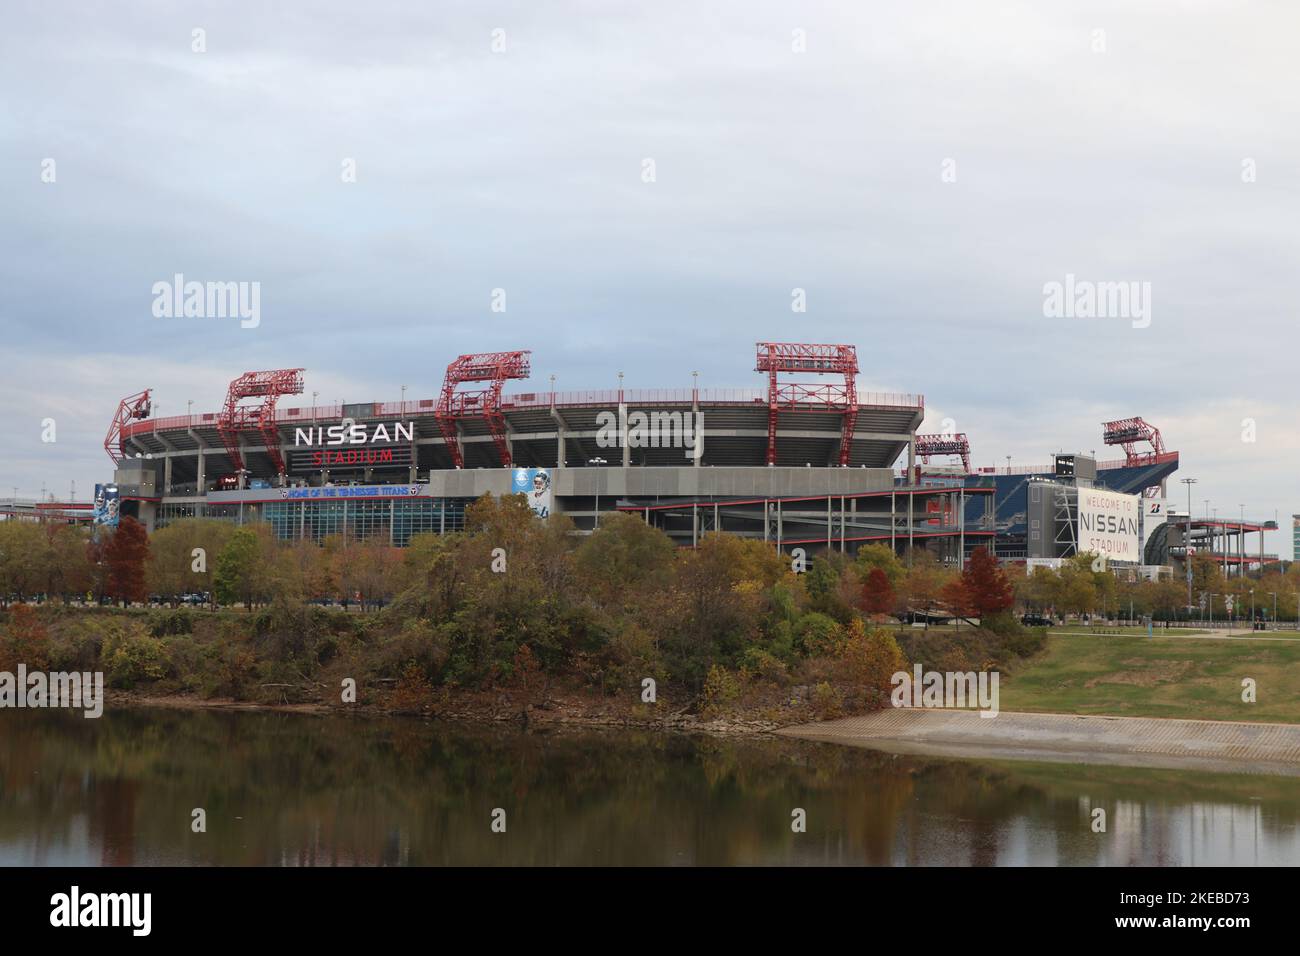 Nissan Stadium in Nashville, home of the Nashville Titans Stock Photo